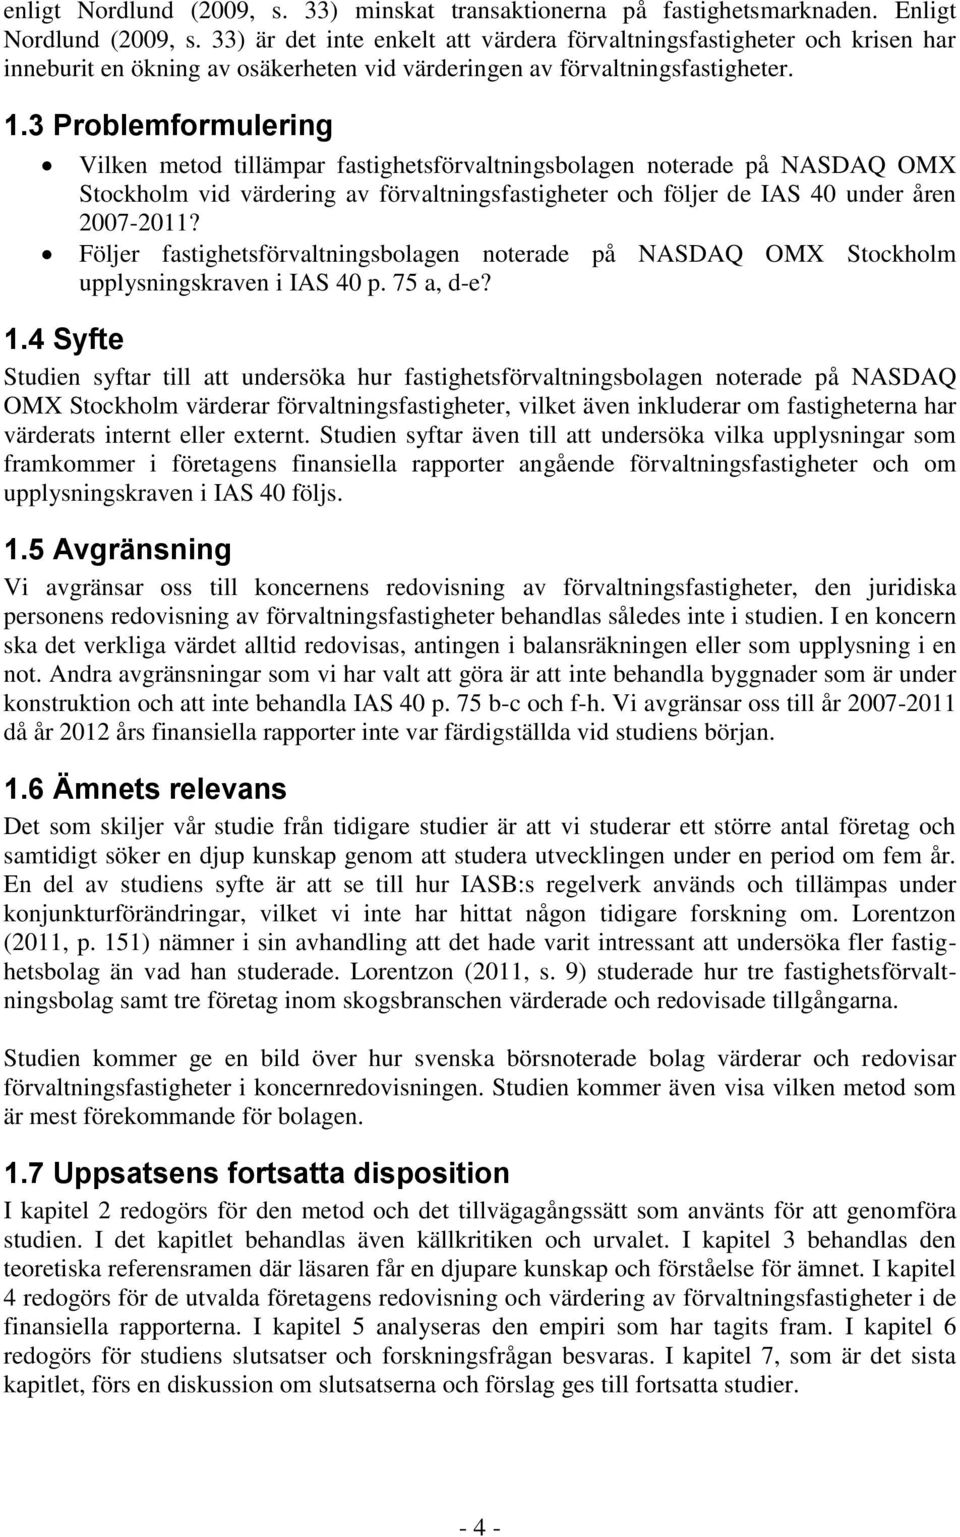 3 Problemformulering Vilken metod tillämpar fastighetsförvaltningsbolagen noterade på NASDAQ OMX Stockholm vid värdering av förvaltningsfastigheter och följer de IAS 40 under åren 2007-2011?